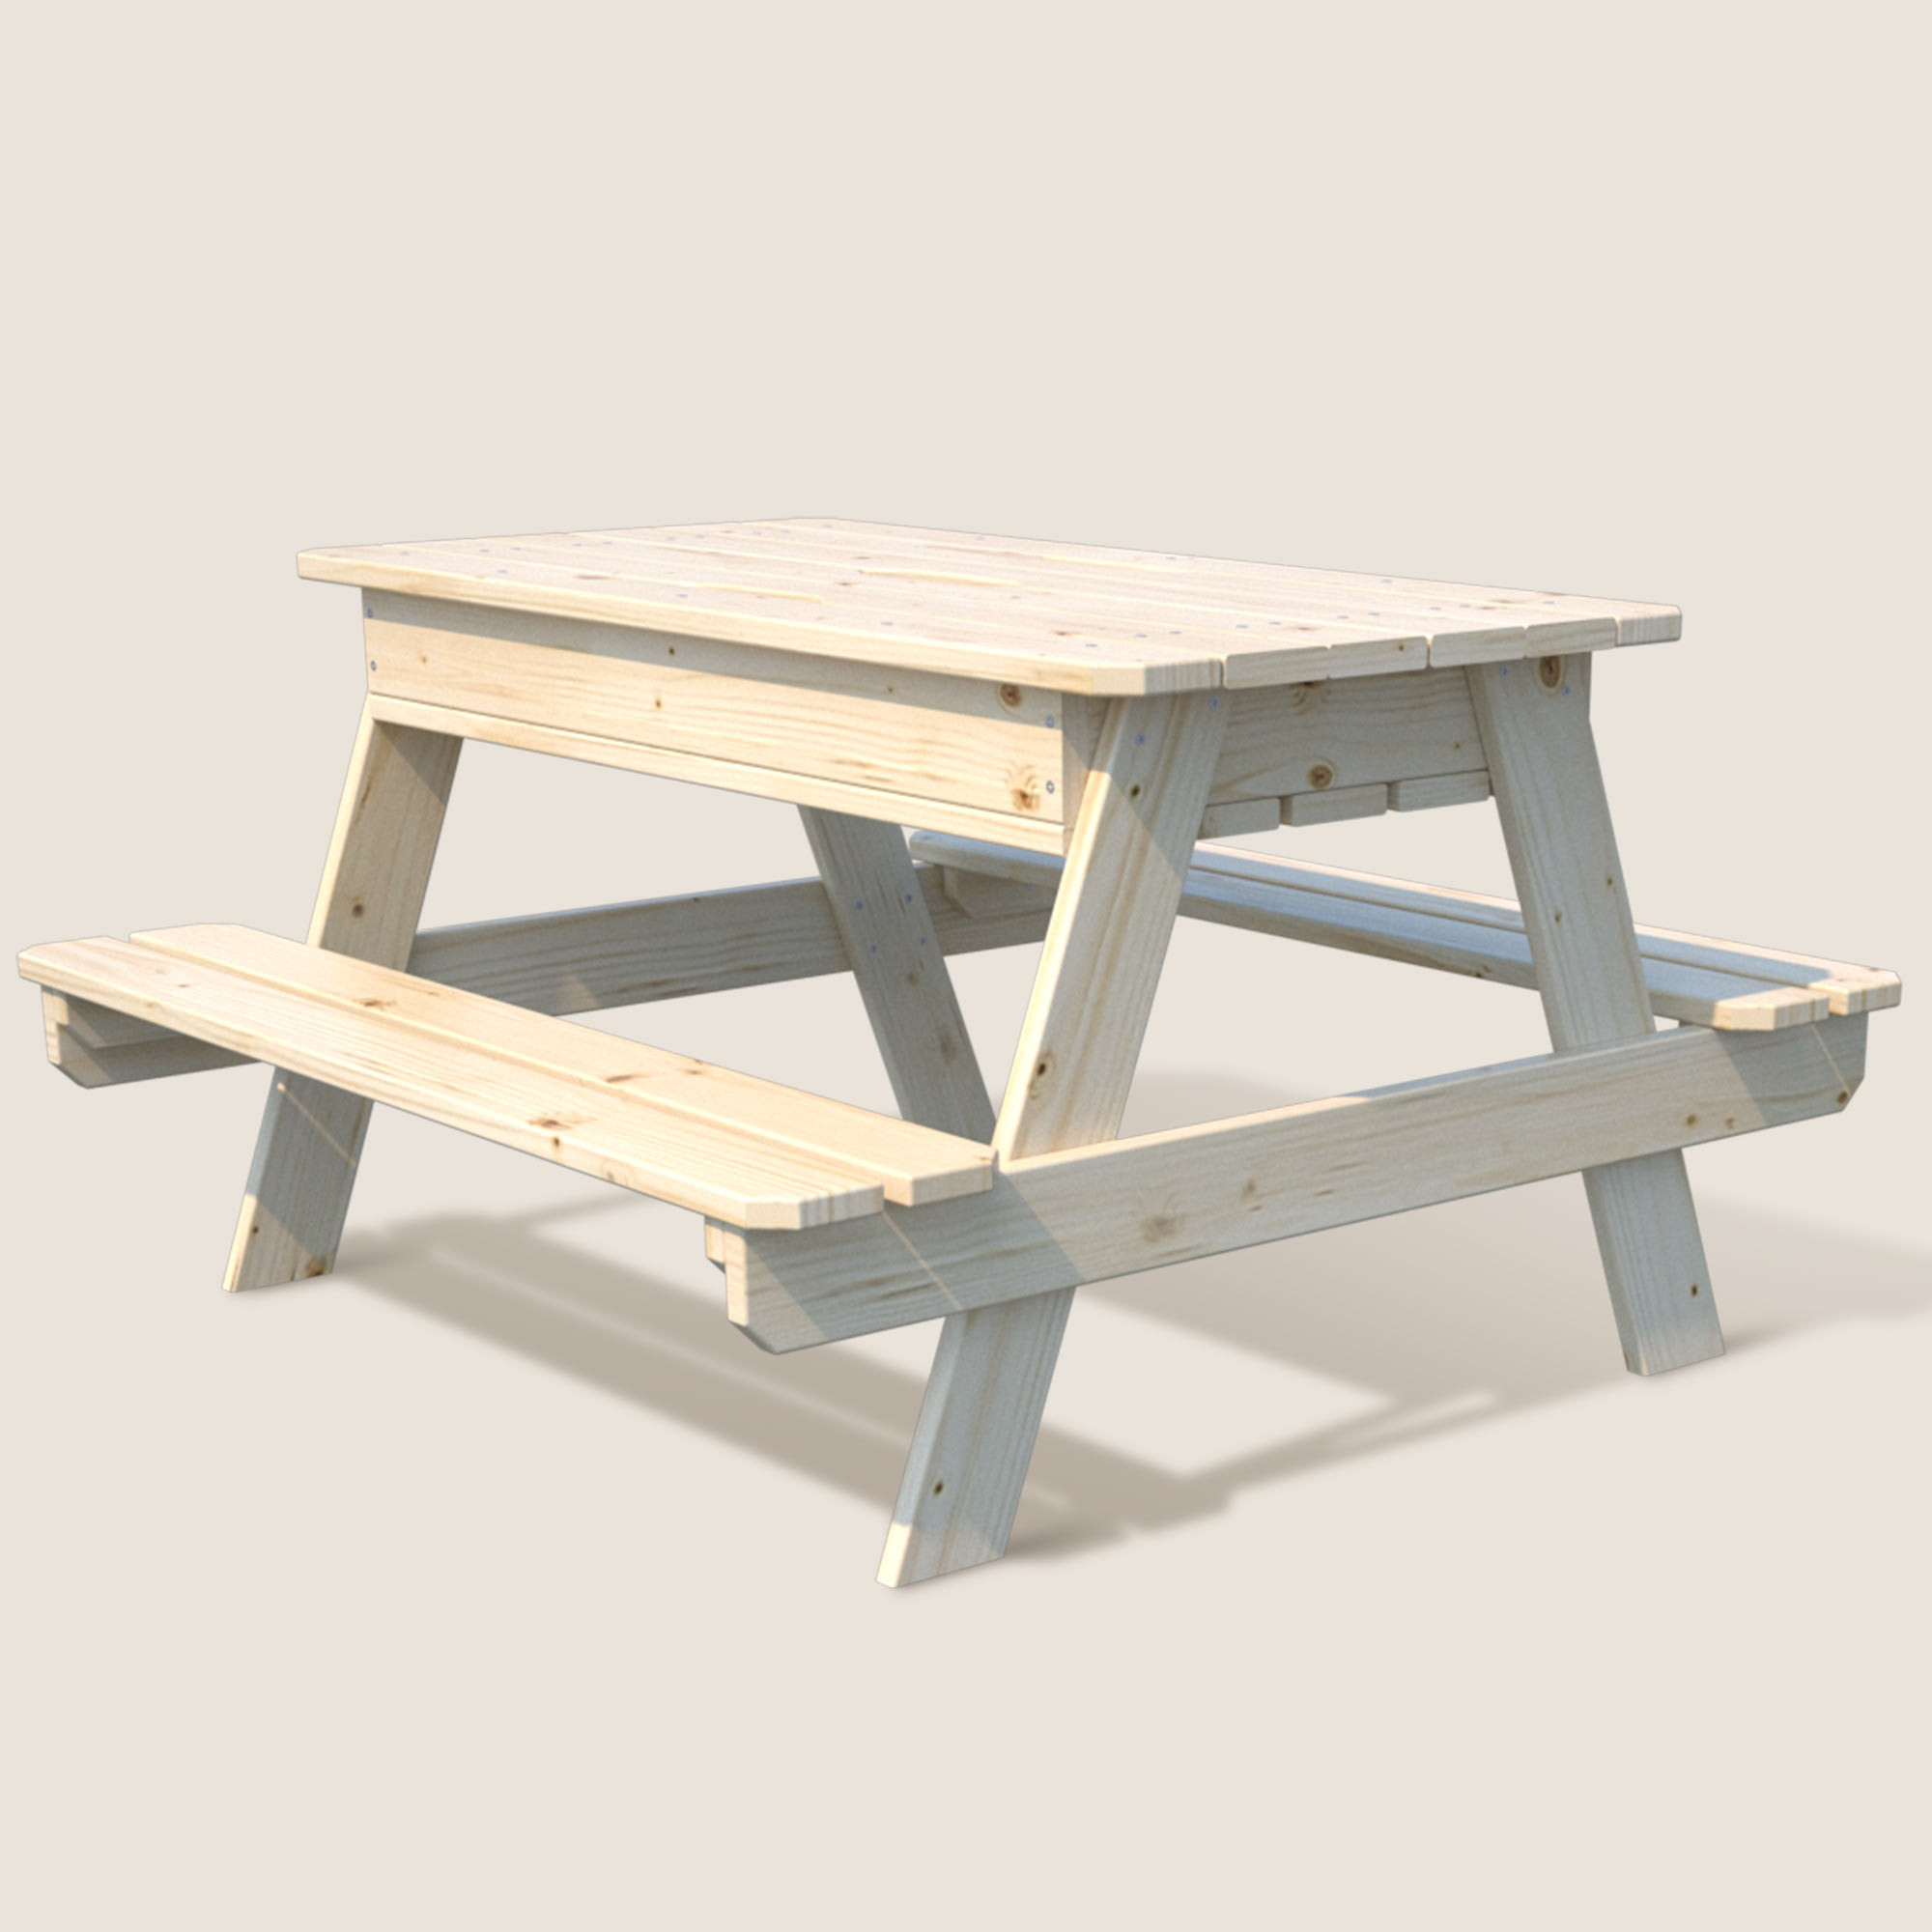 Table en bois pour enfants avec bac à sable M010-1